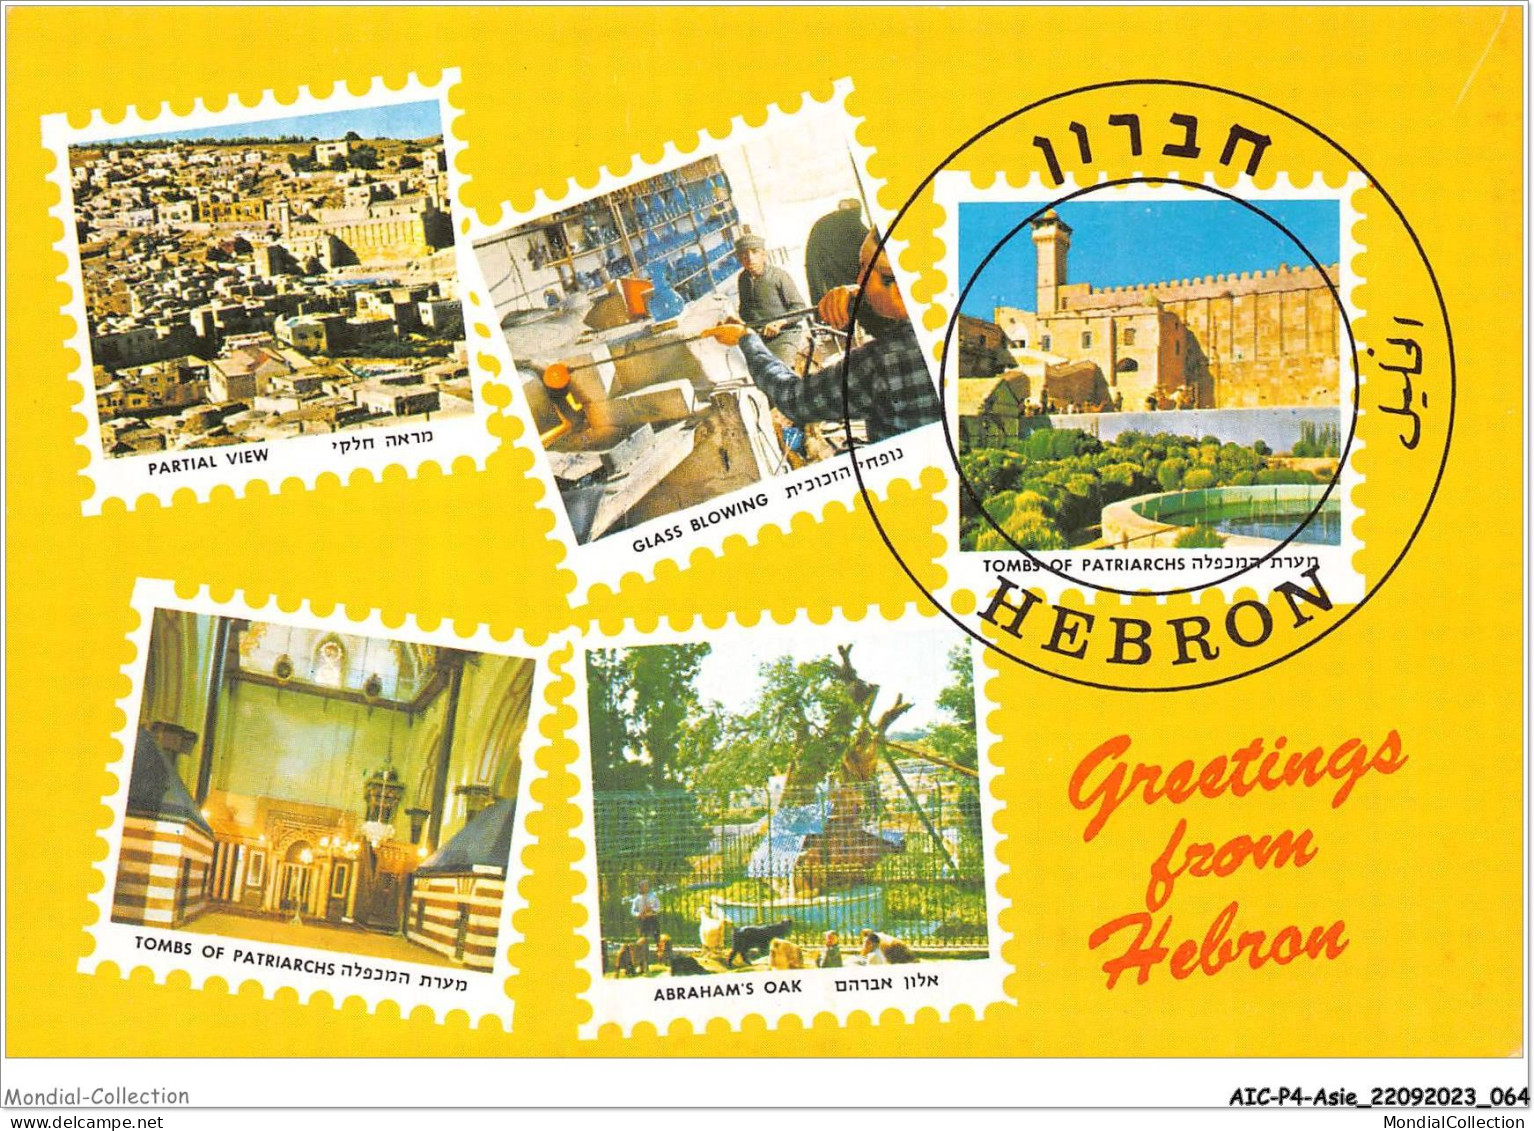 AICP4-ASIE-0431 - ISRAEL Greetings From HEBRON - Israel